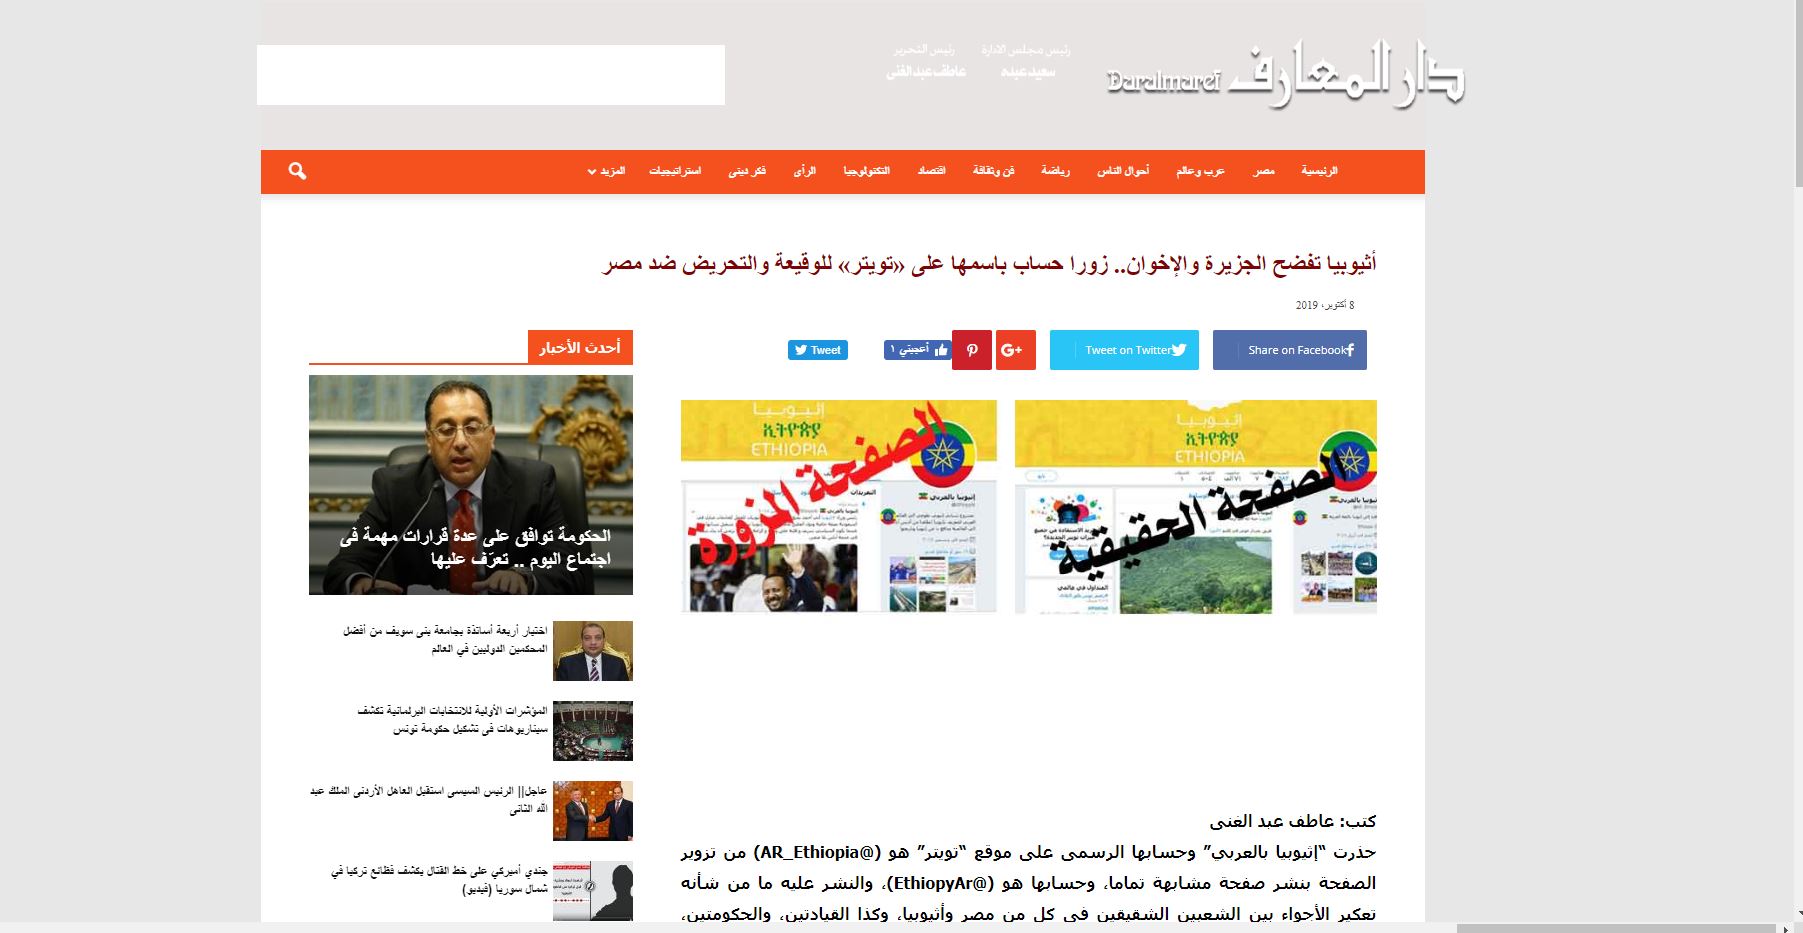   خبر «دار المعارف» عن تزوير «الجزيرة» صفحة أولى فى جريدة الأخبار والمواقع والسوشيال ميديا